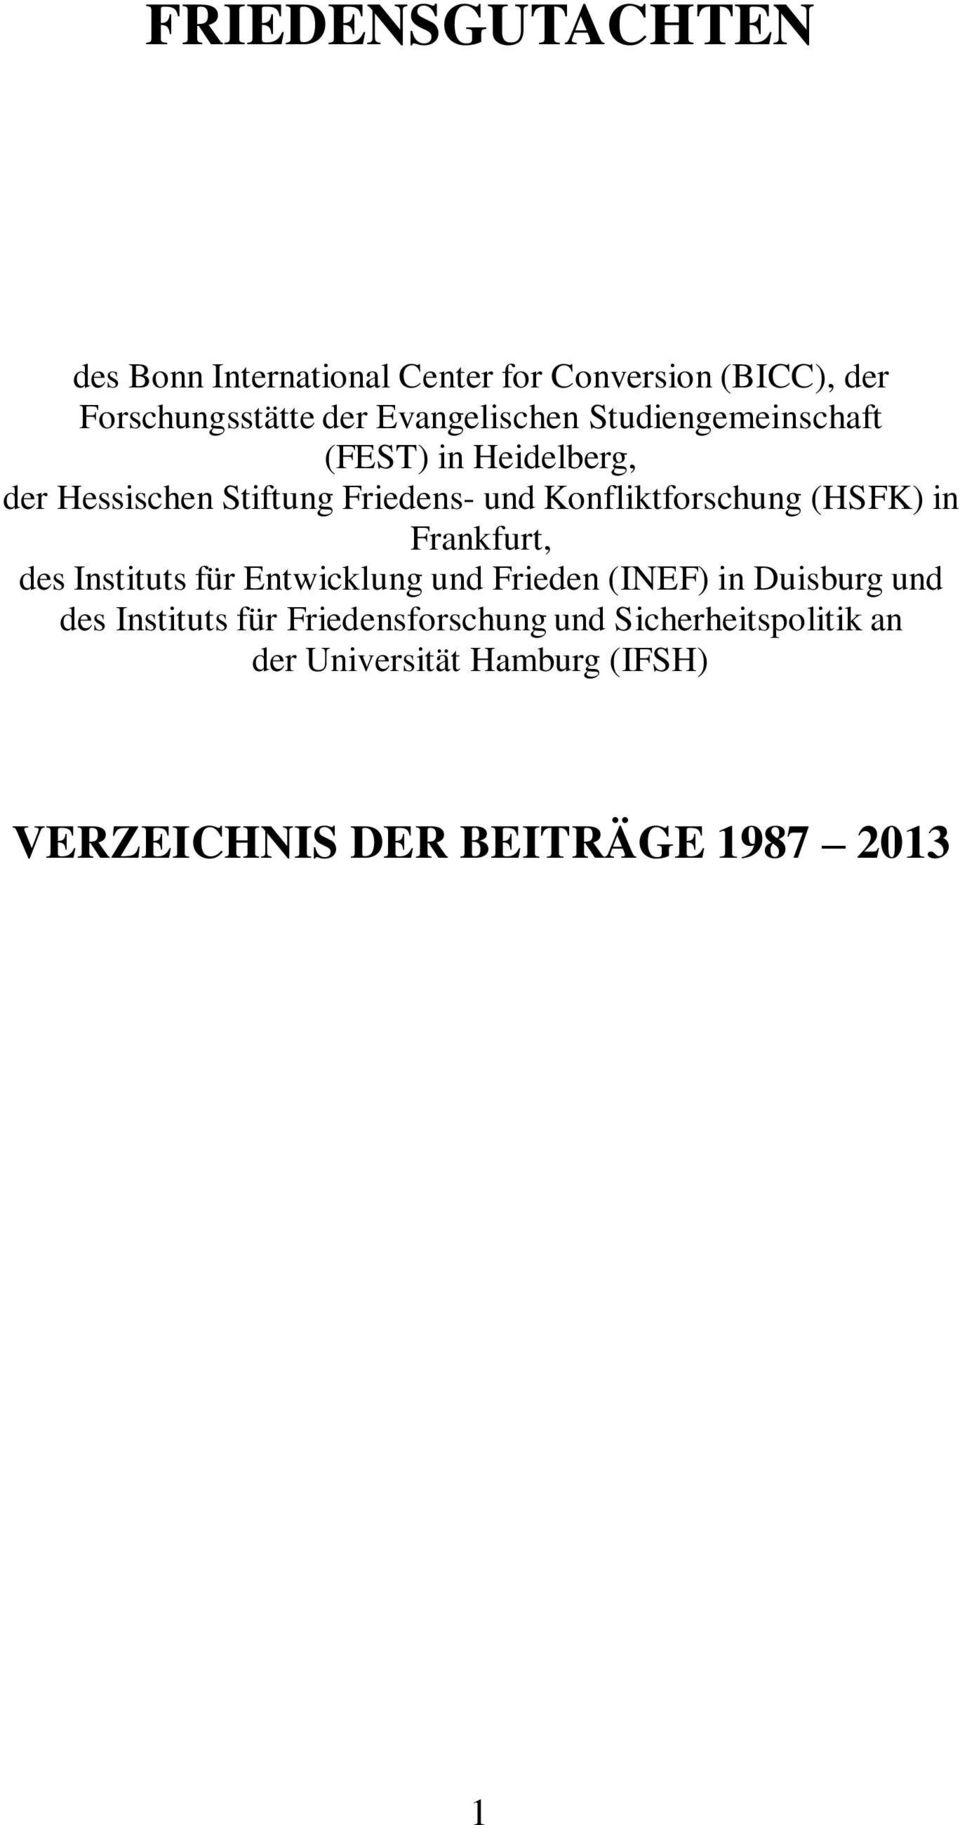 Konfliktforschung (HSFK) in Frankfurt, des Instituts für Entwicklung und Frieden (INEF) in Duisburg und